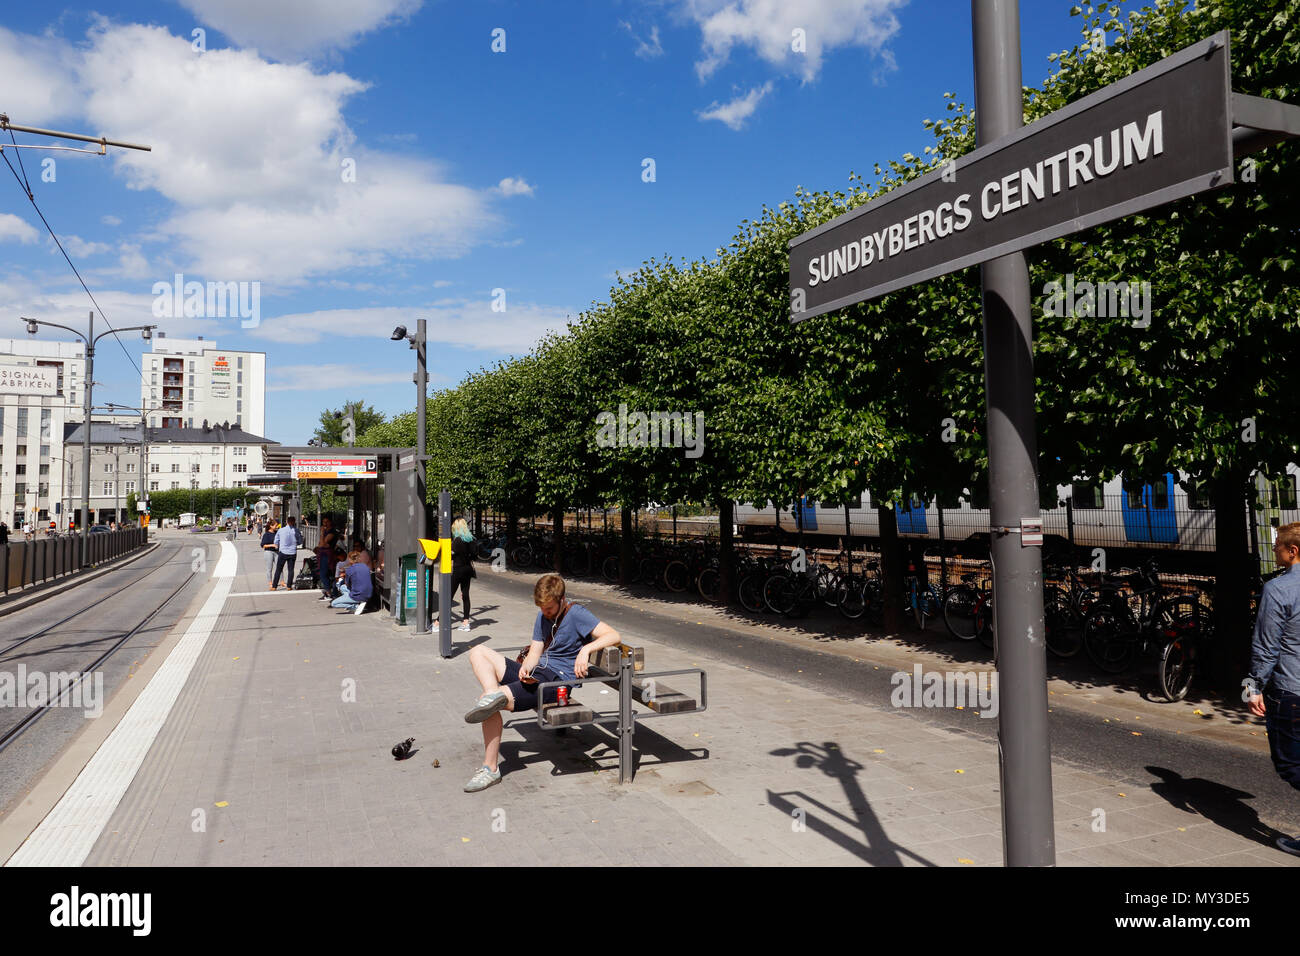 Sundbyberg, Svezia - 2 Agosto 2017: persone in attesa alla fermata del tram Sundbyberg Centrum al momento il servizio Tvarbanan. Foto Stock